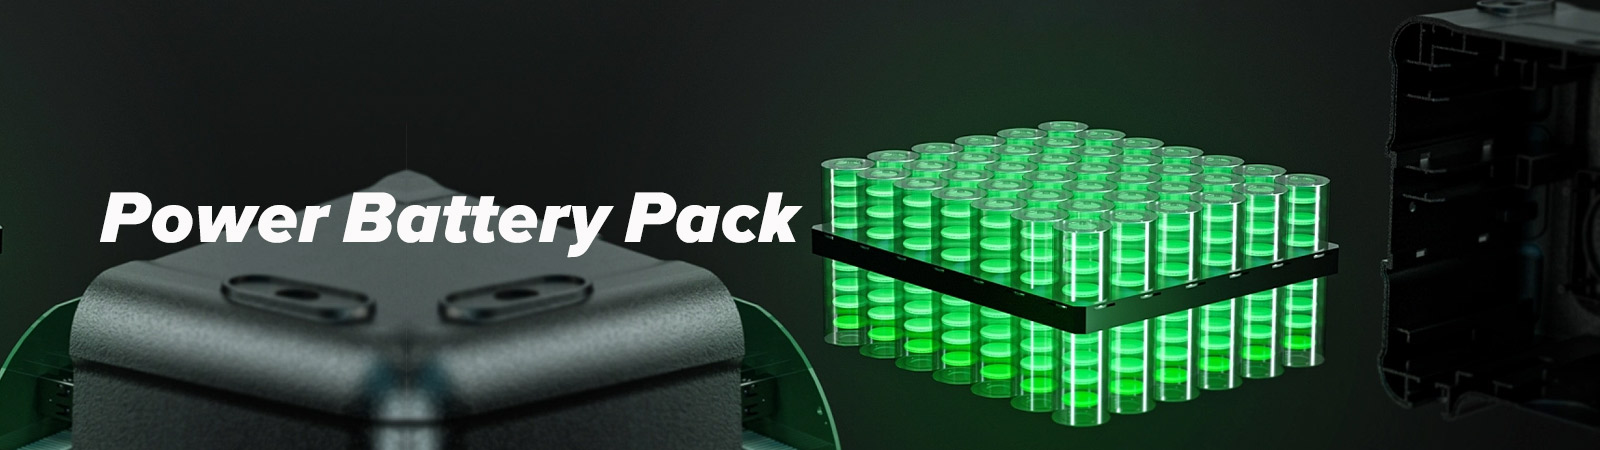 Power Battery Pack